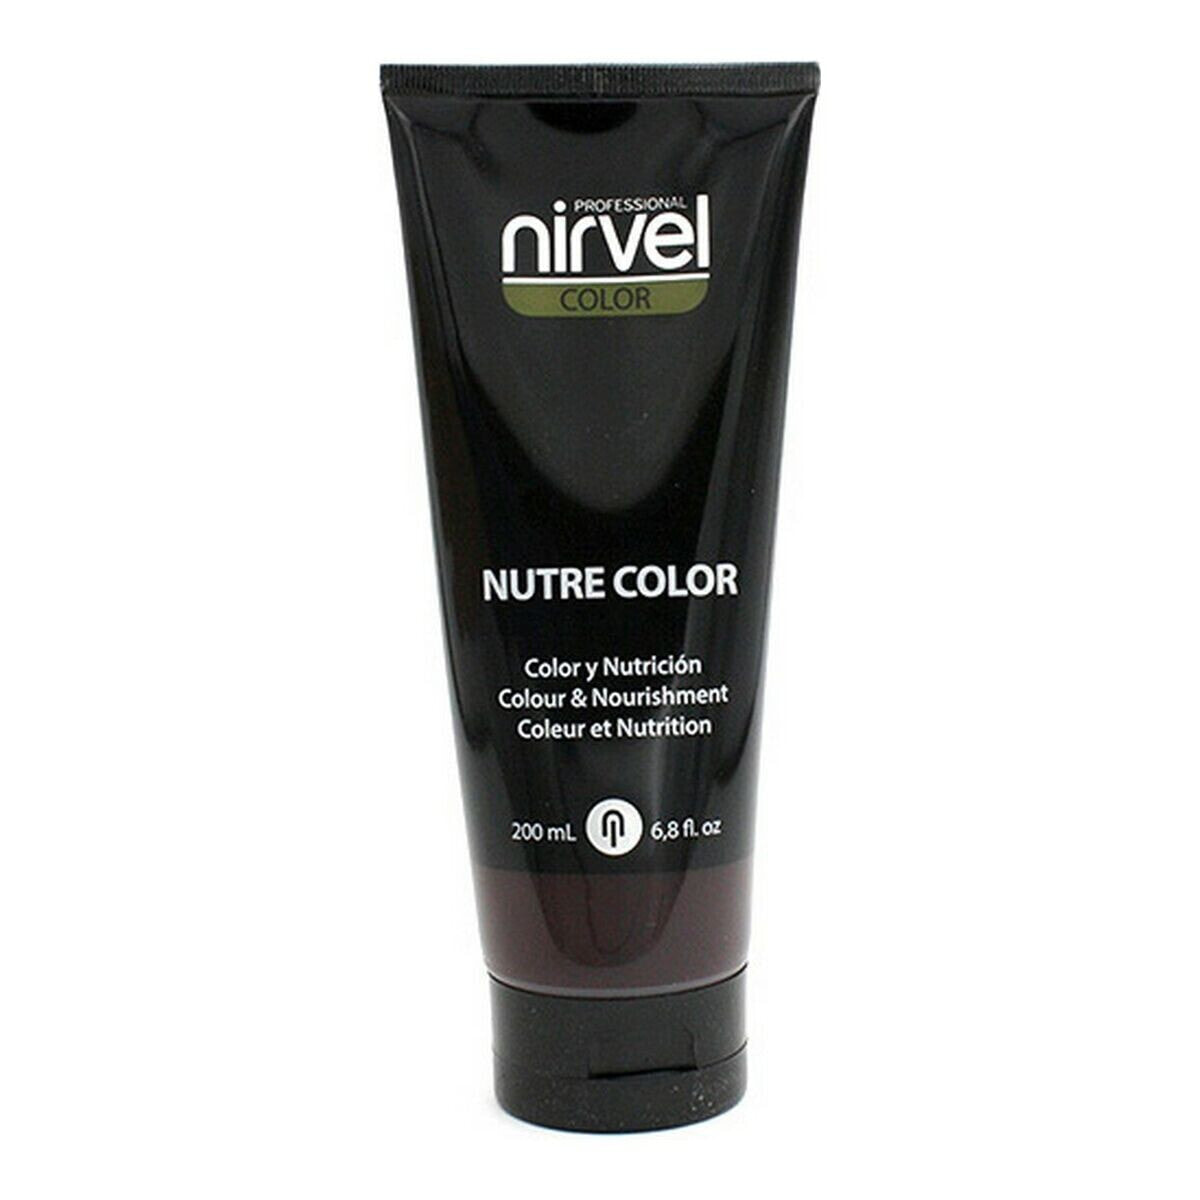 Временная краска Nutre Color Nirvel 8435054682797 Коричневый (200 ml)